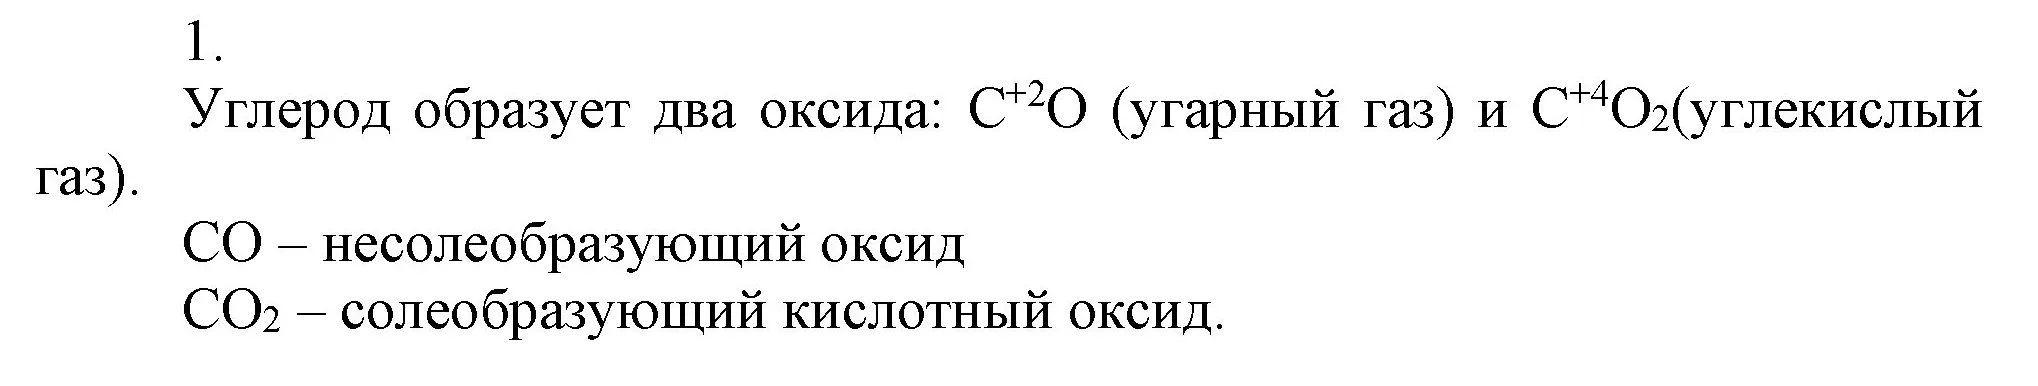 Решение номер 1 (страница 114) гдз по химии 9 класс Габриелян, Остроумов, учебник